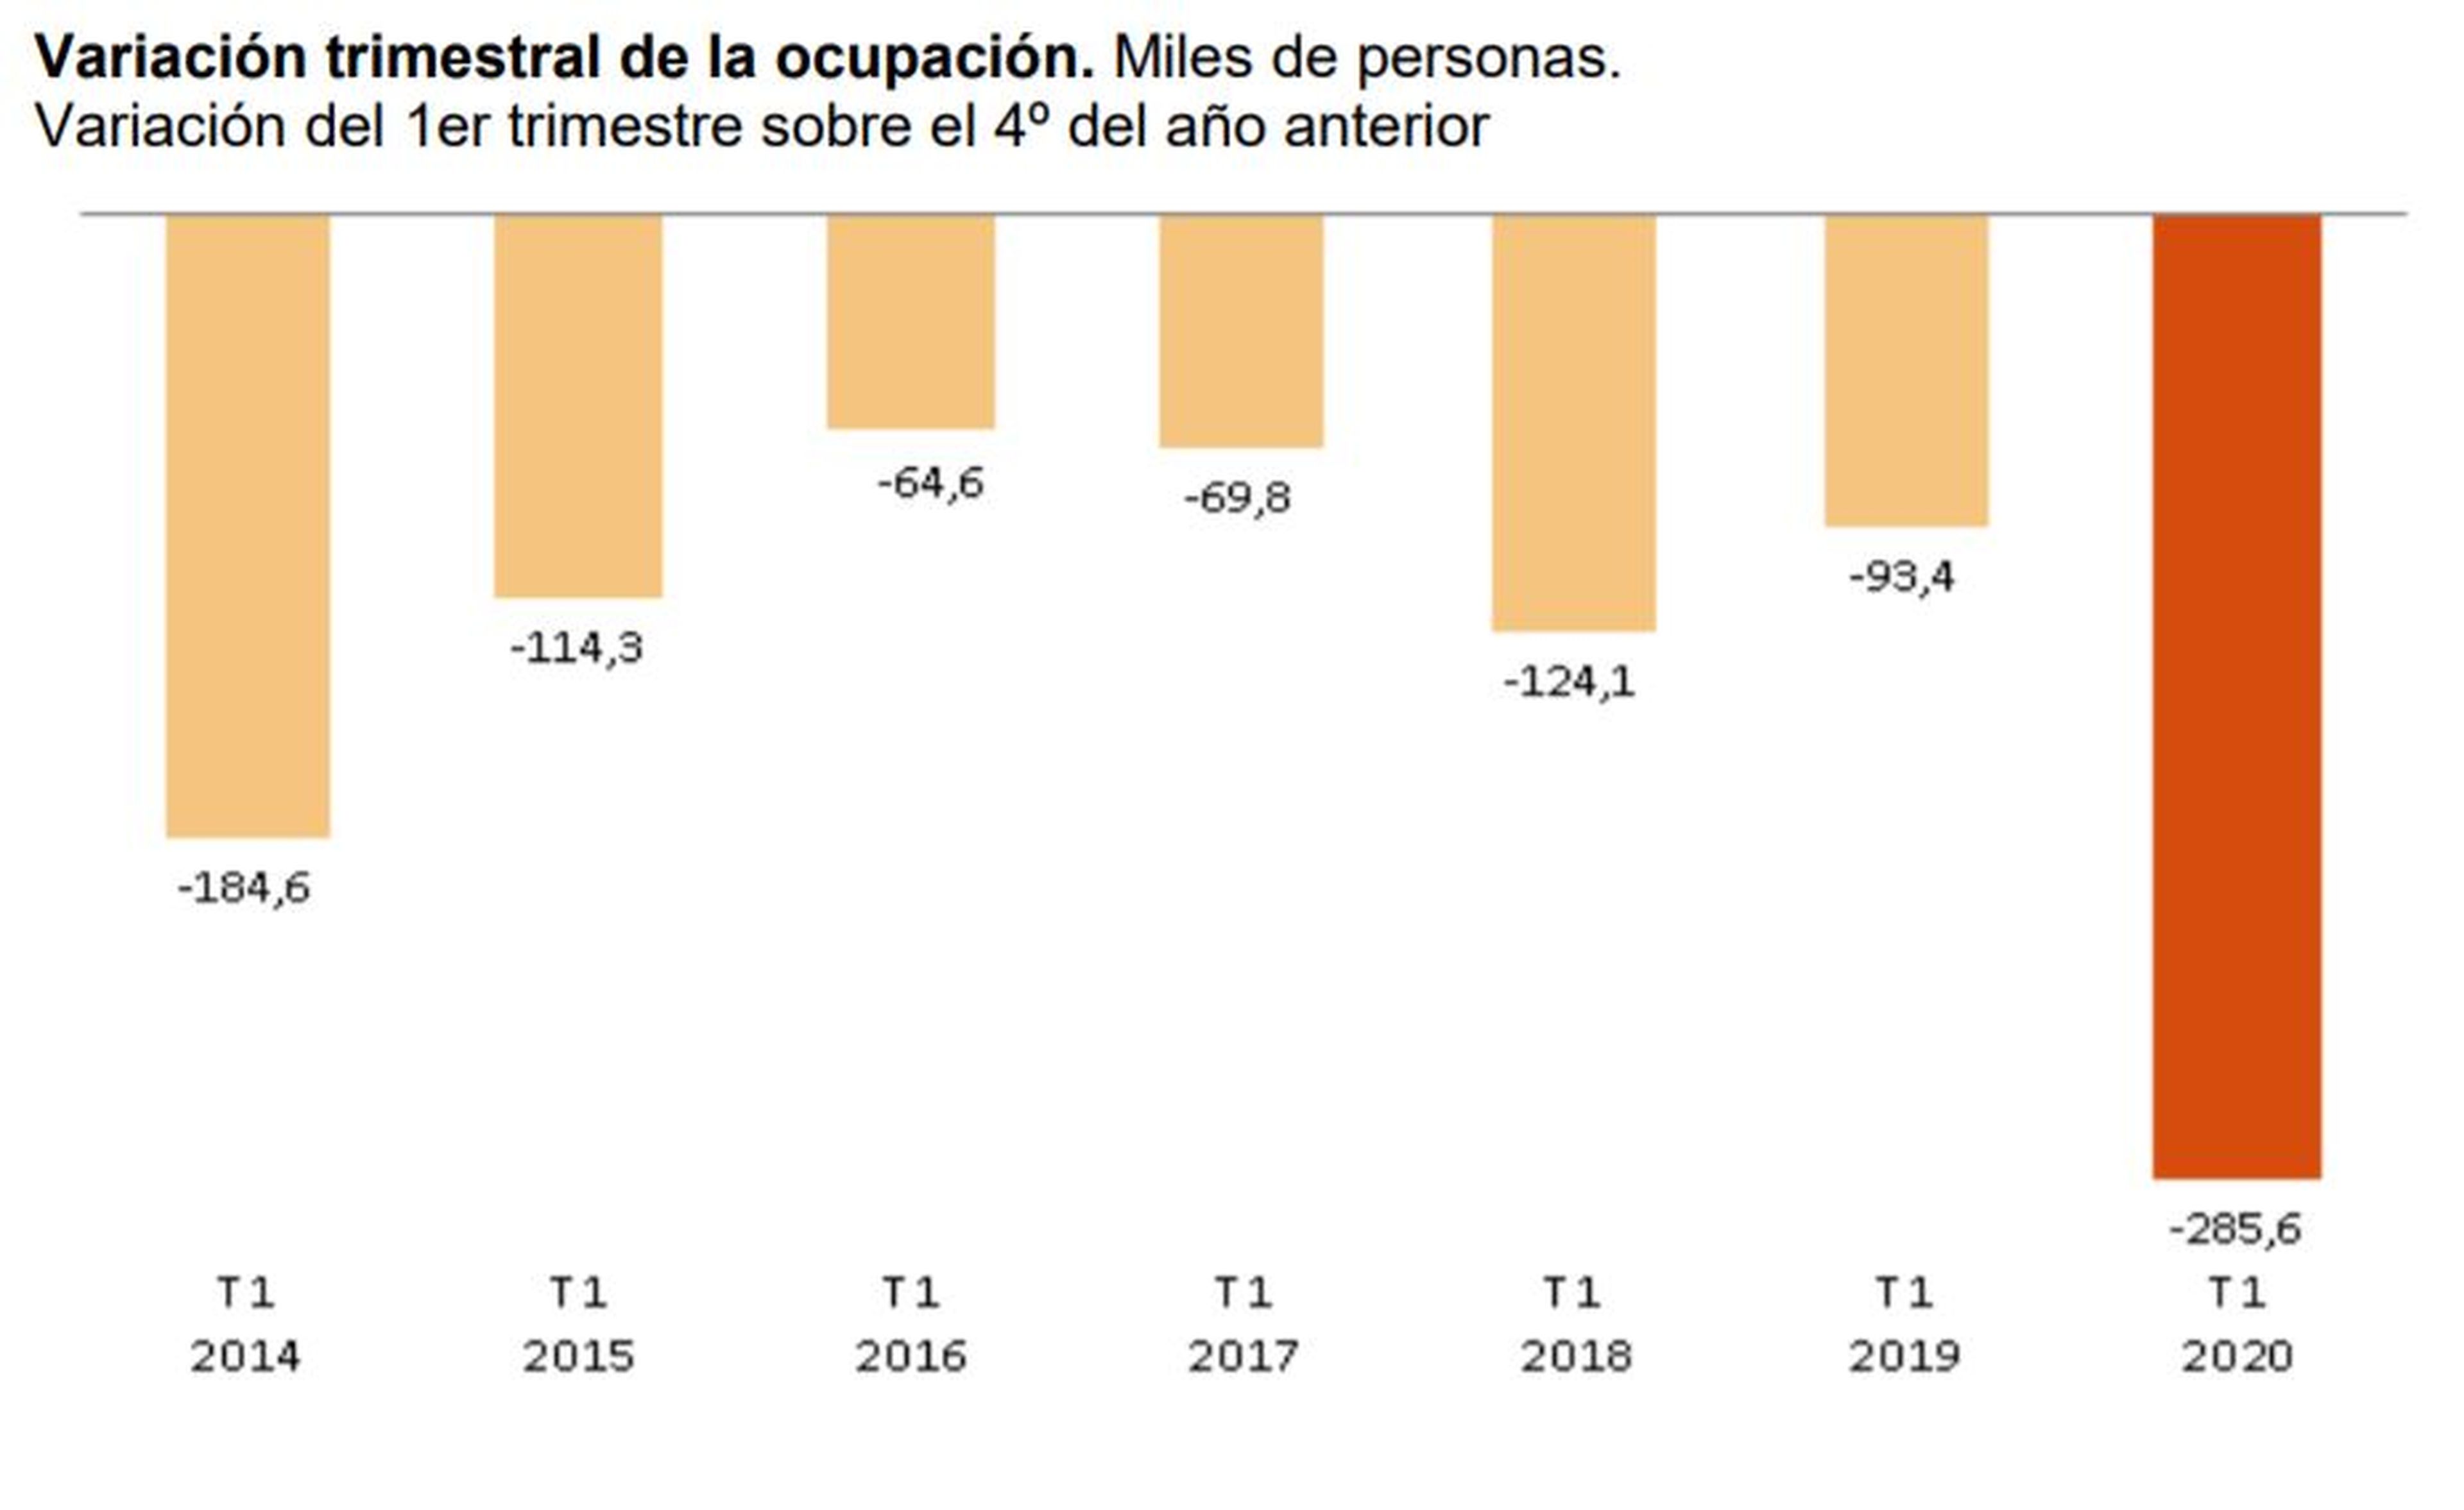 Datos de ocupación en el primer trimestre del año, según datos de la EPA desde 2014